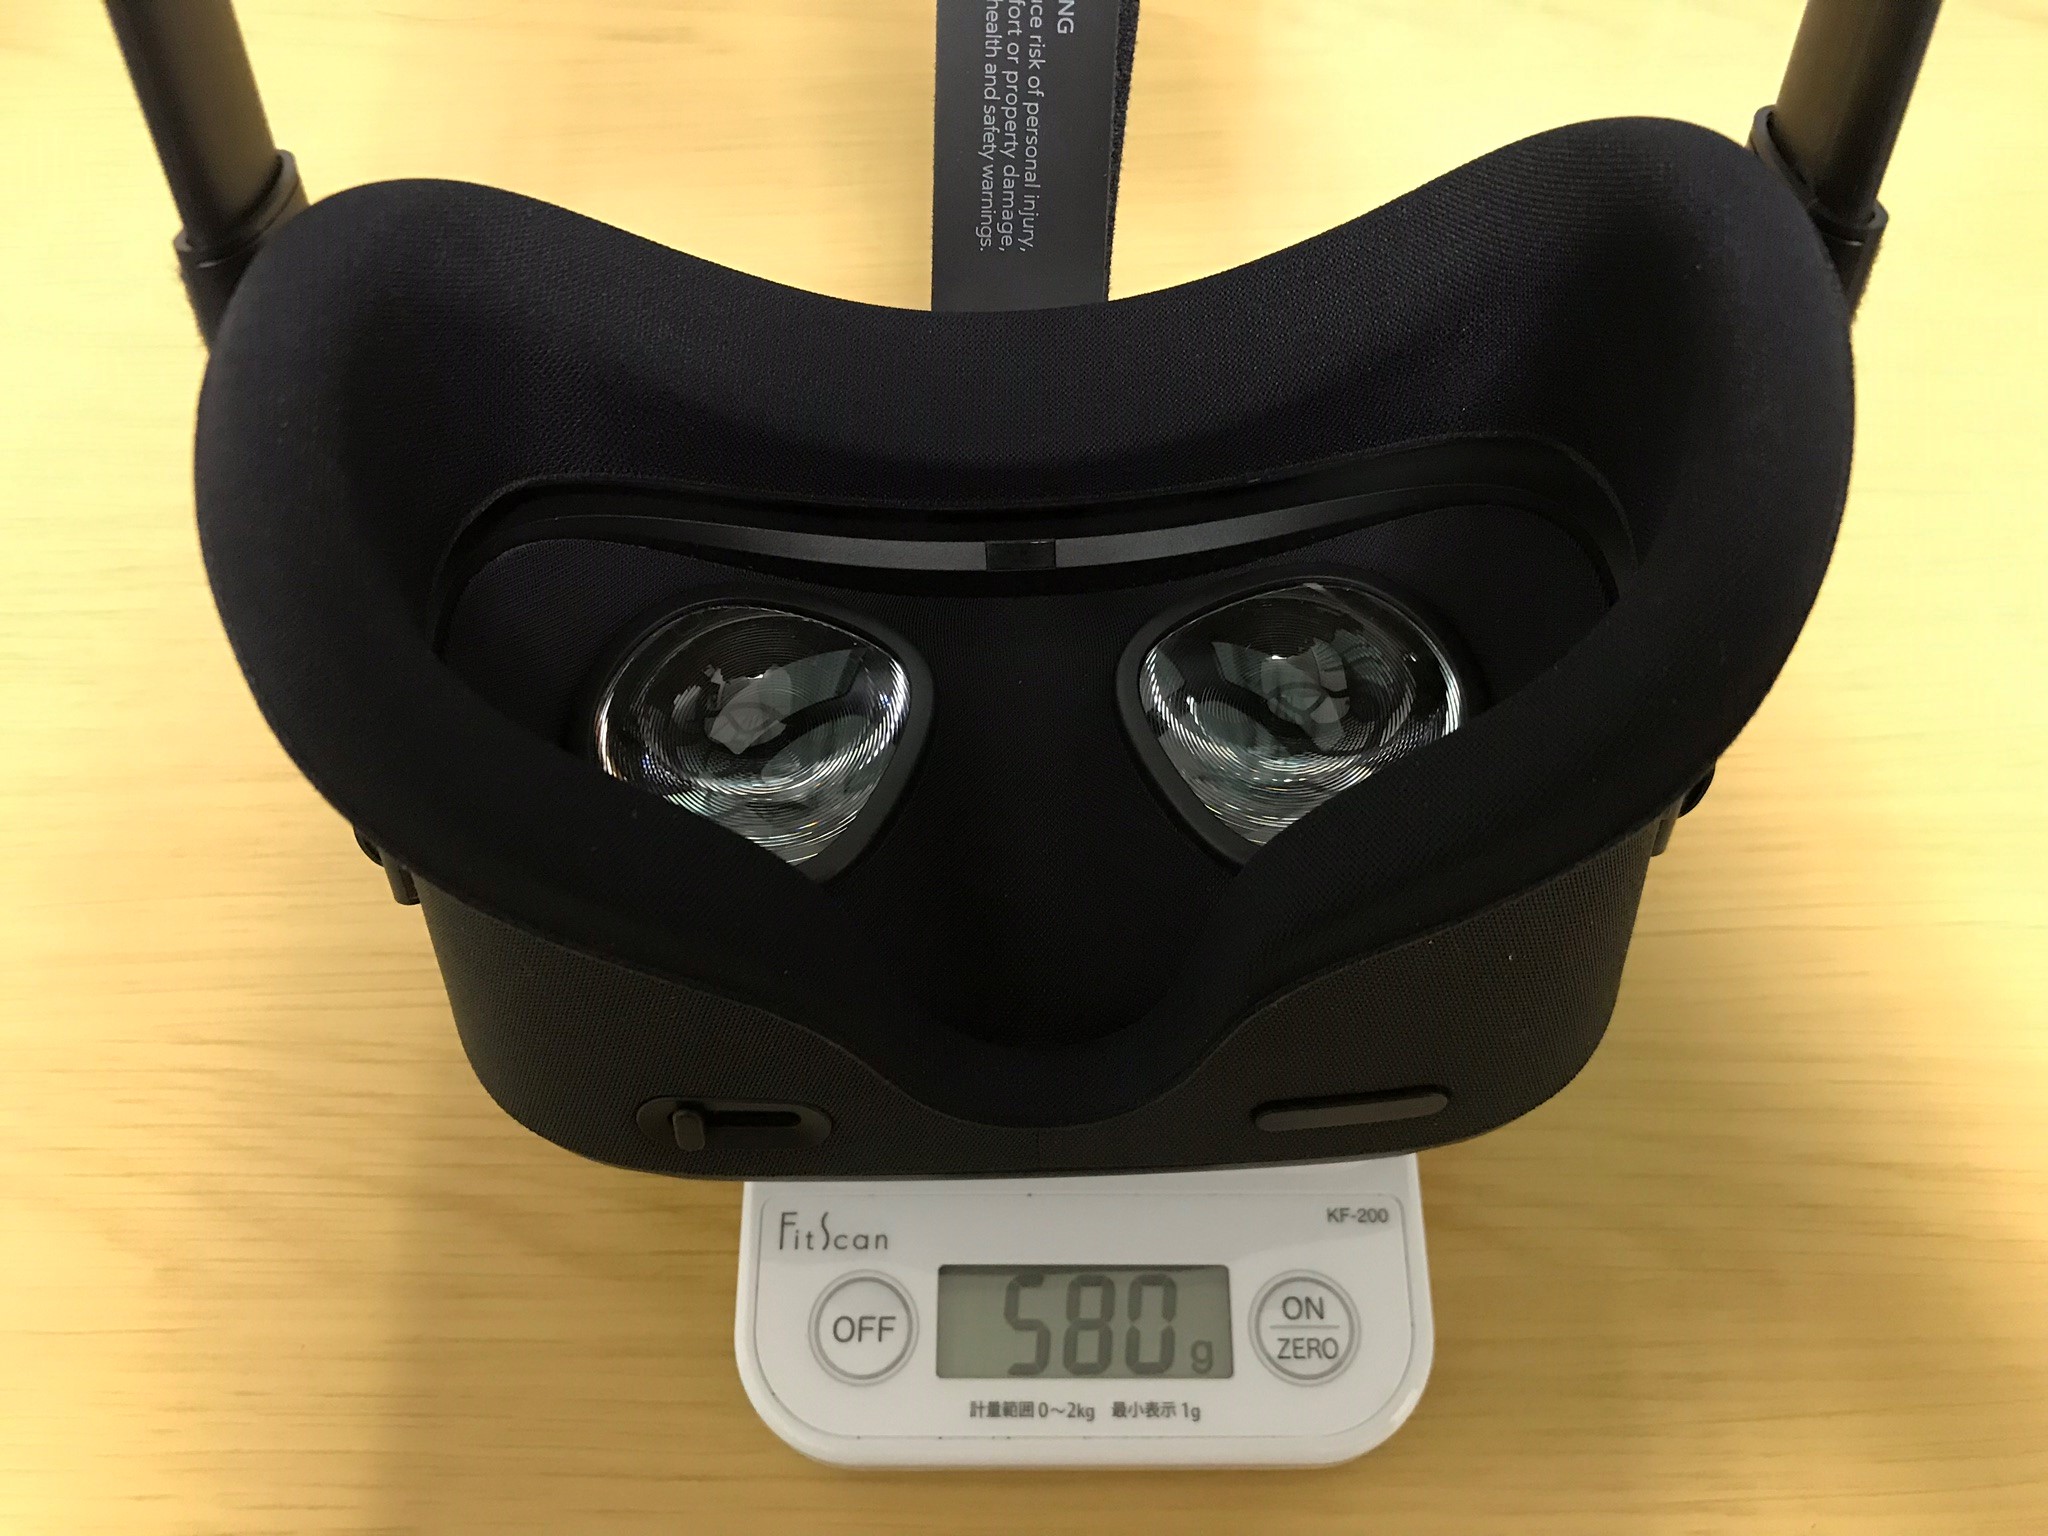 【対処法】Oculus Go/Quest (VR) が重い、首が疲れる、肩が凝る!! 重さ対策は?